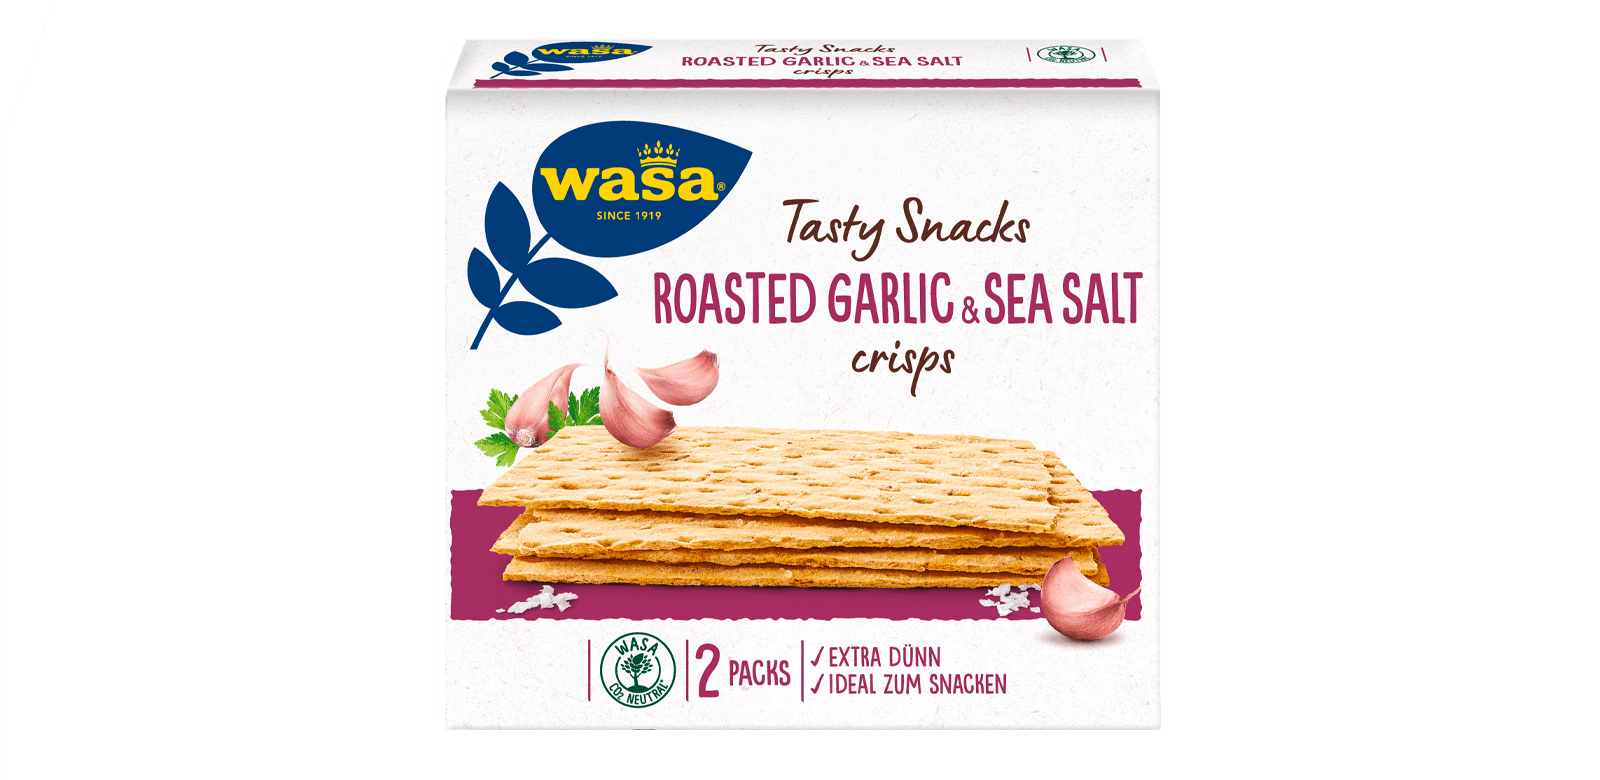 Tasty Snacks Roasted Garlic & Sea Salt Crisps packed